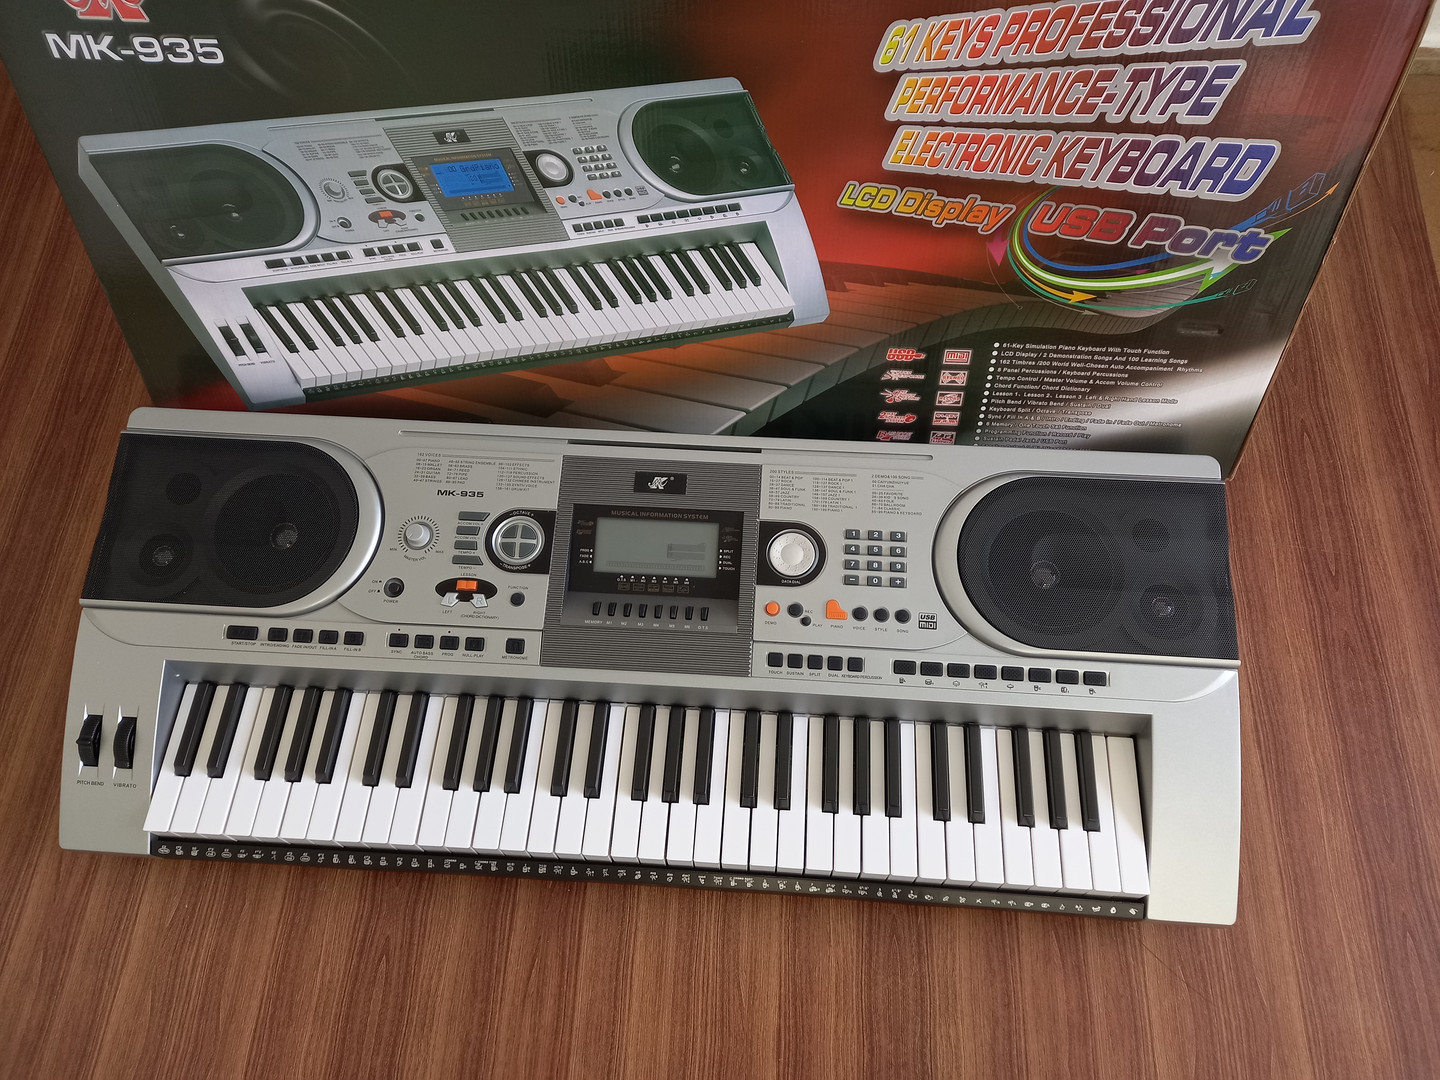 instrumentos musicales - NUEVO PIANO 5 OCTAVAS SENSIBLE USB MIDI DOBLE PITCH BEND !!!